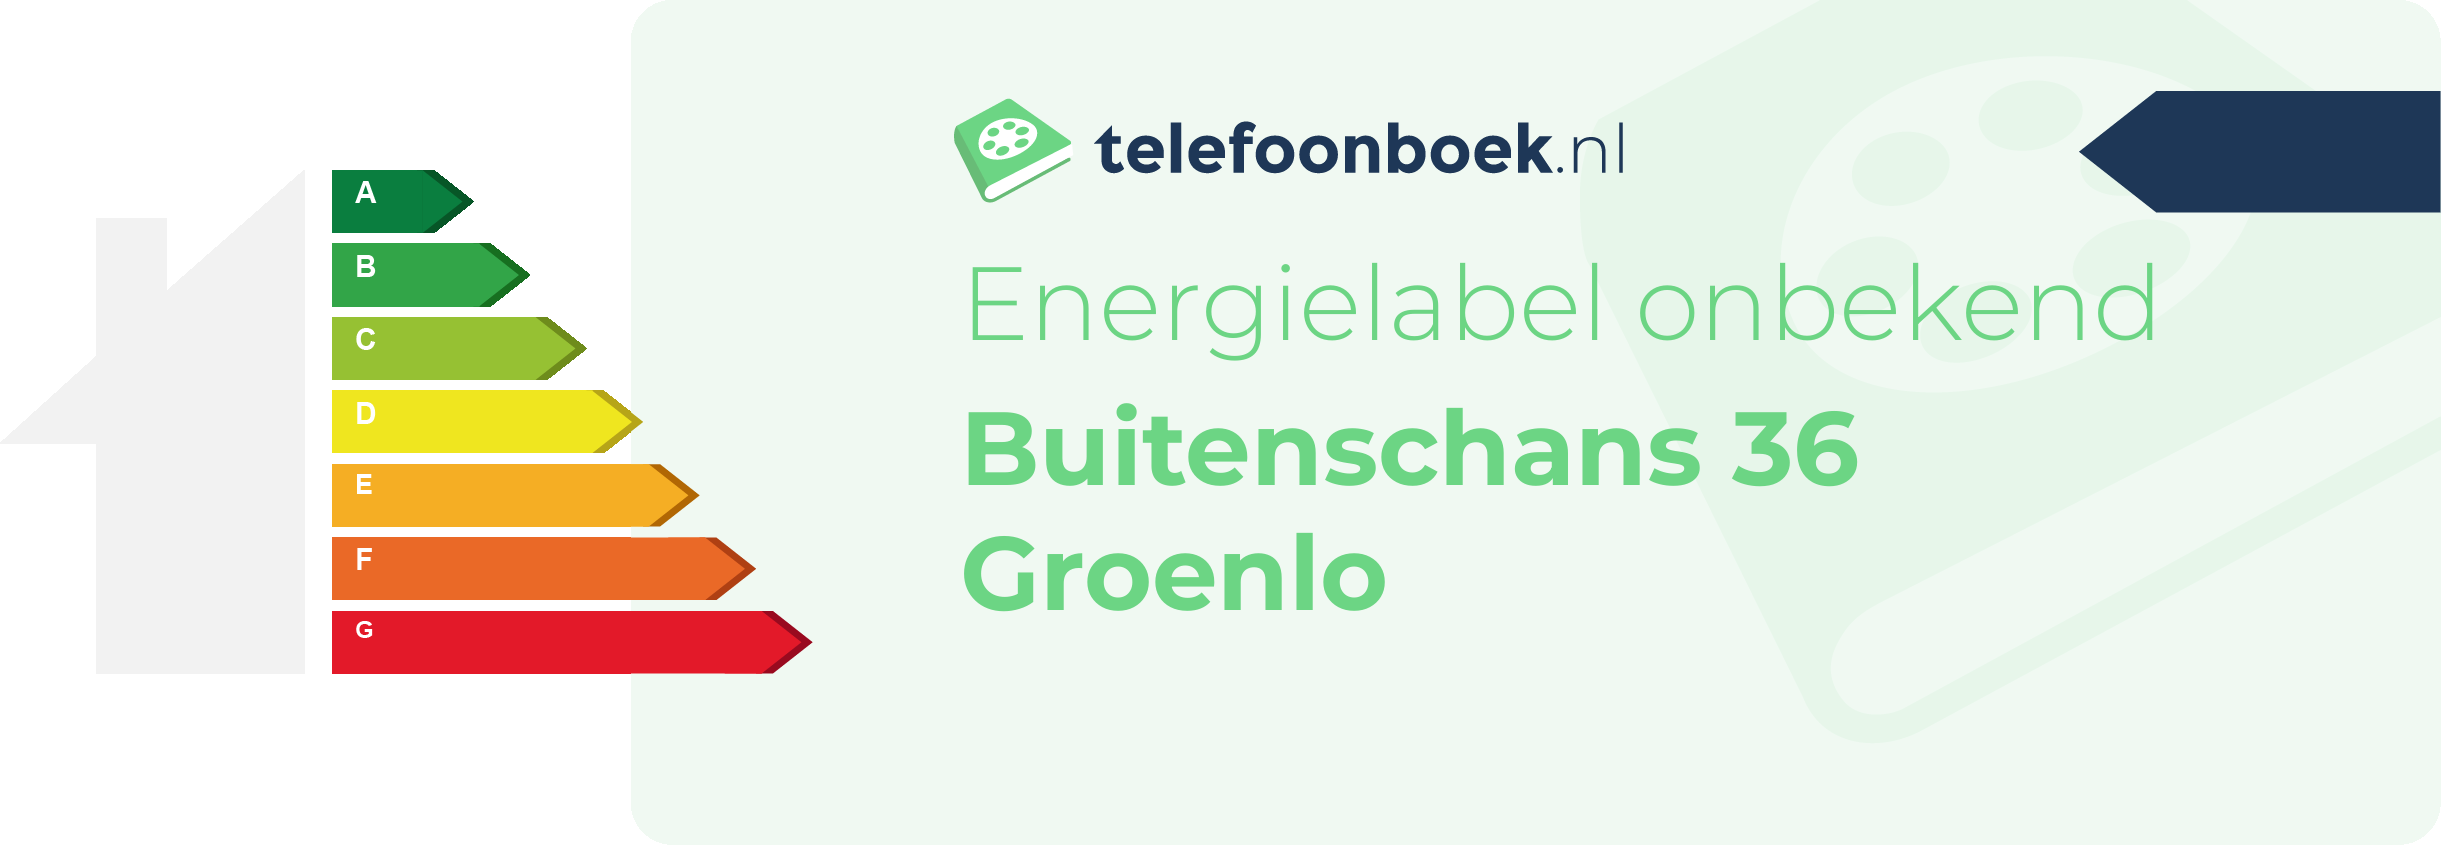 Energielabel Buitenschans 36 Groenlo